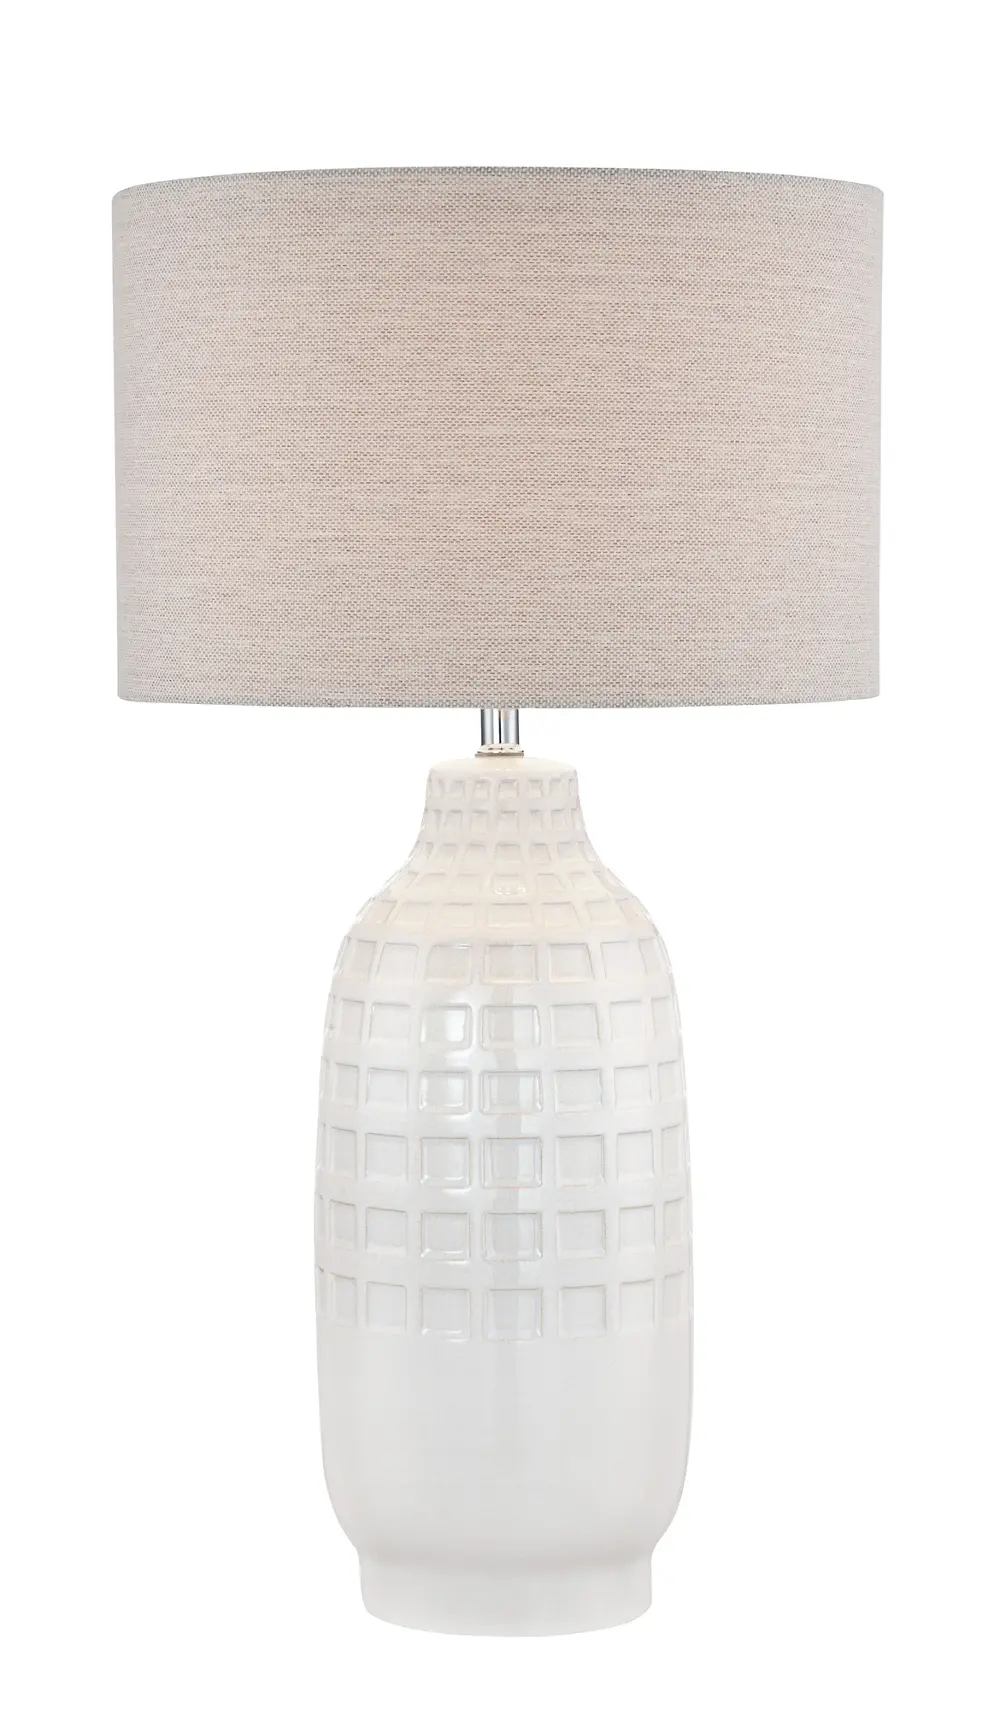 Glossy Ivory Ceramic Table Lamp - Naomi-1